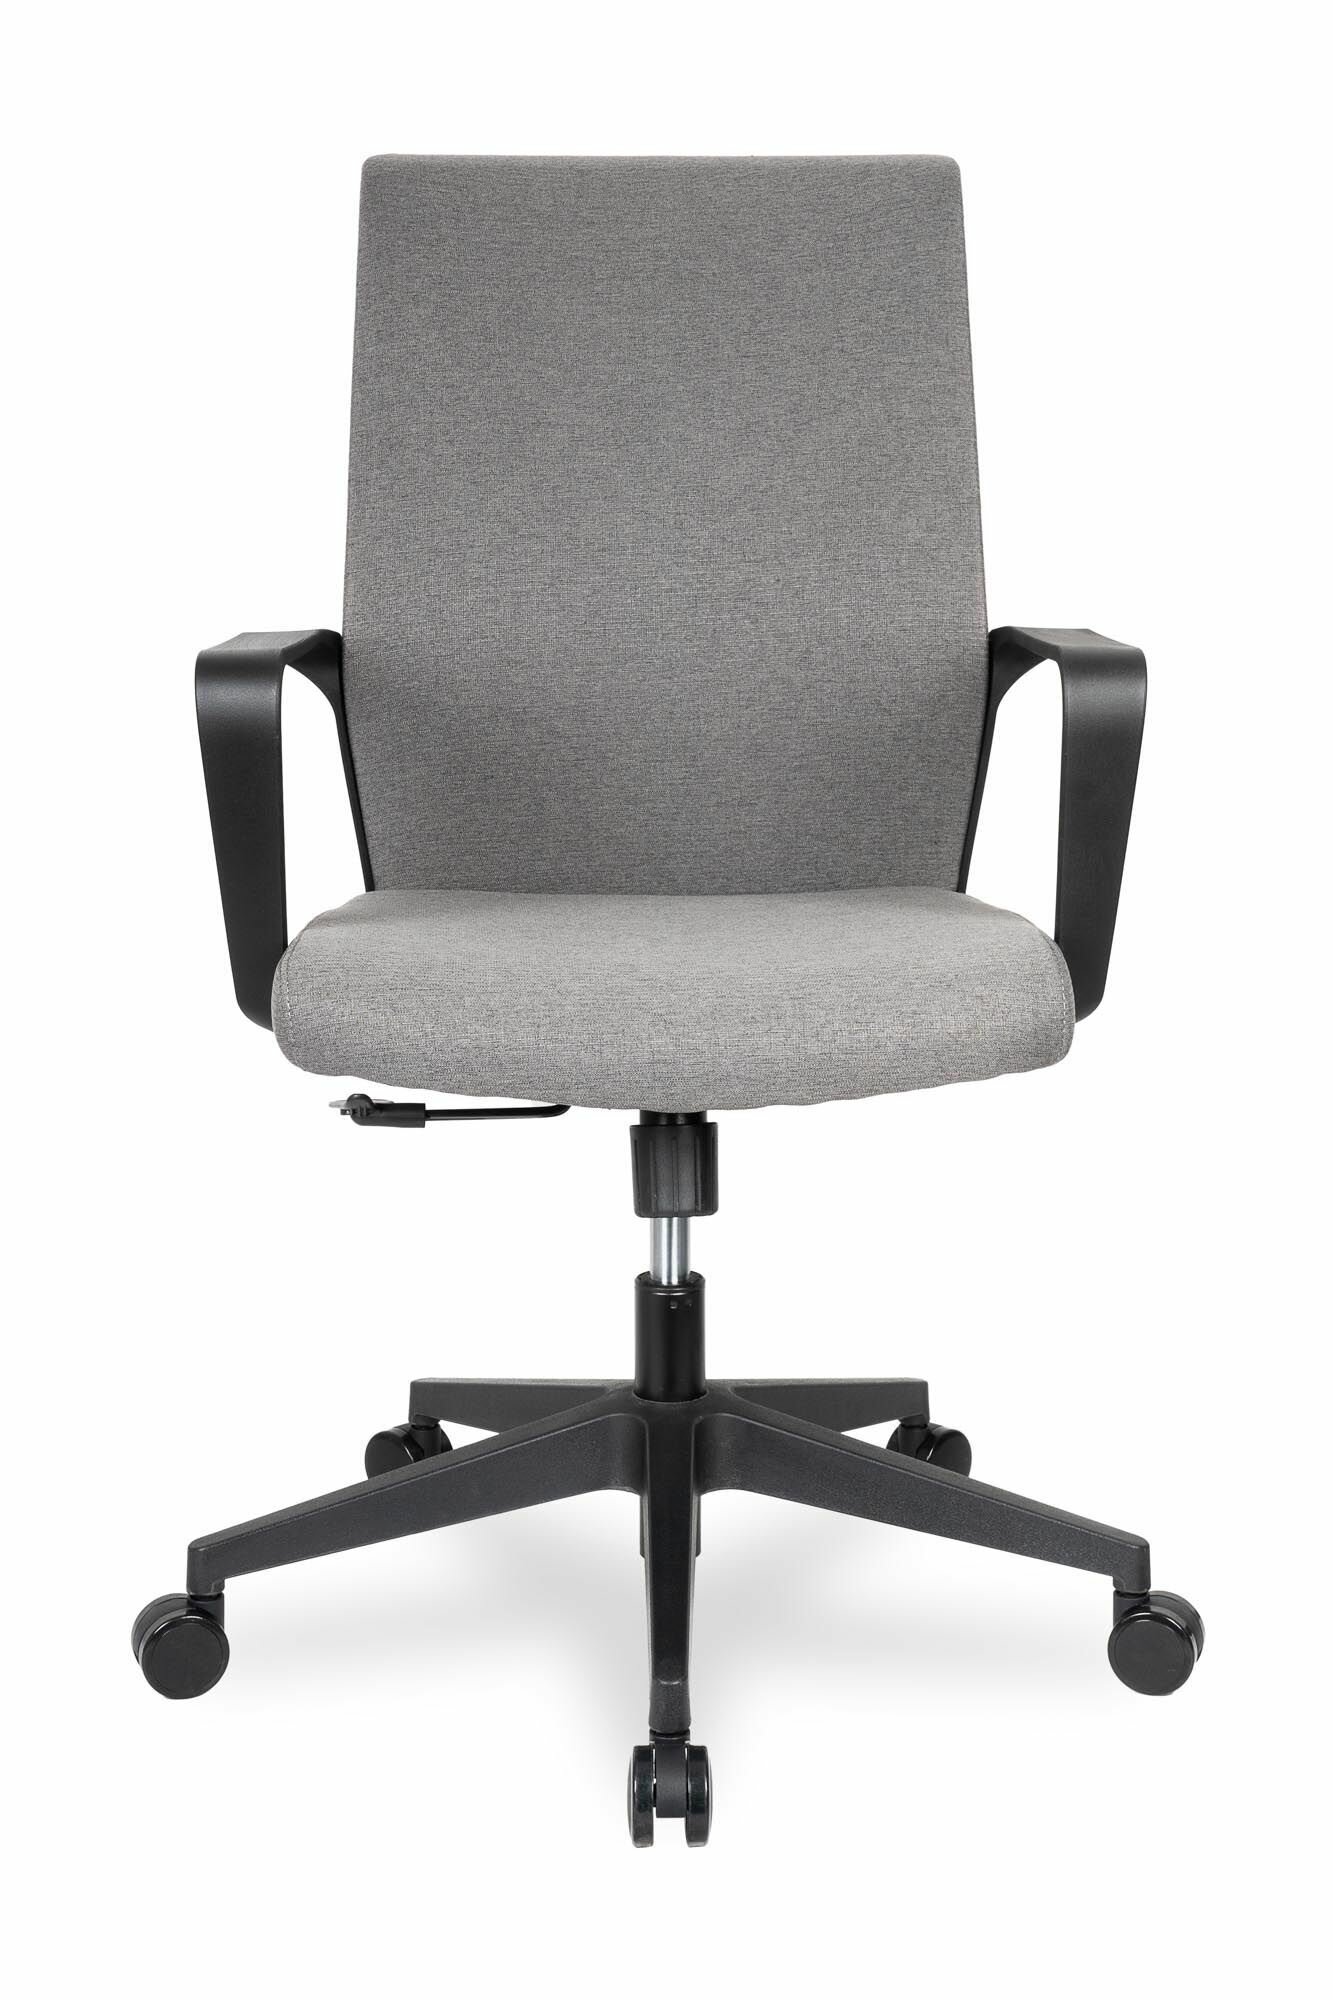 Компьютерное кресло College CLG-427 офисное, обивка: искусственная кожа, цвет: черный 2 - фото №6